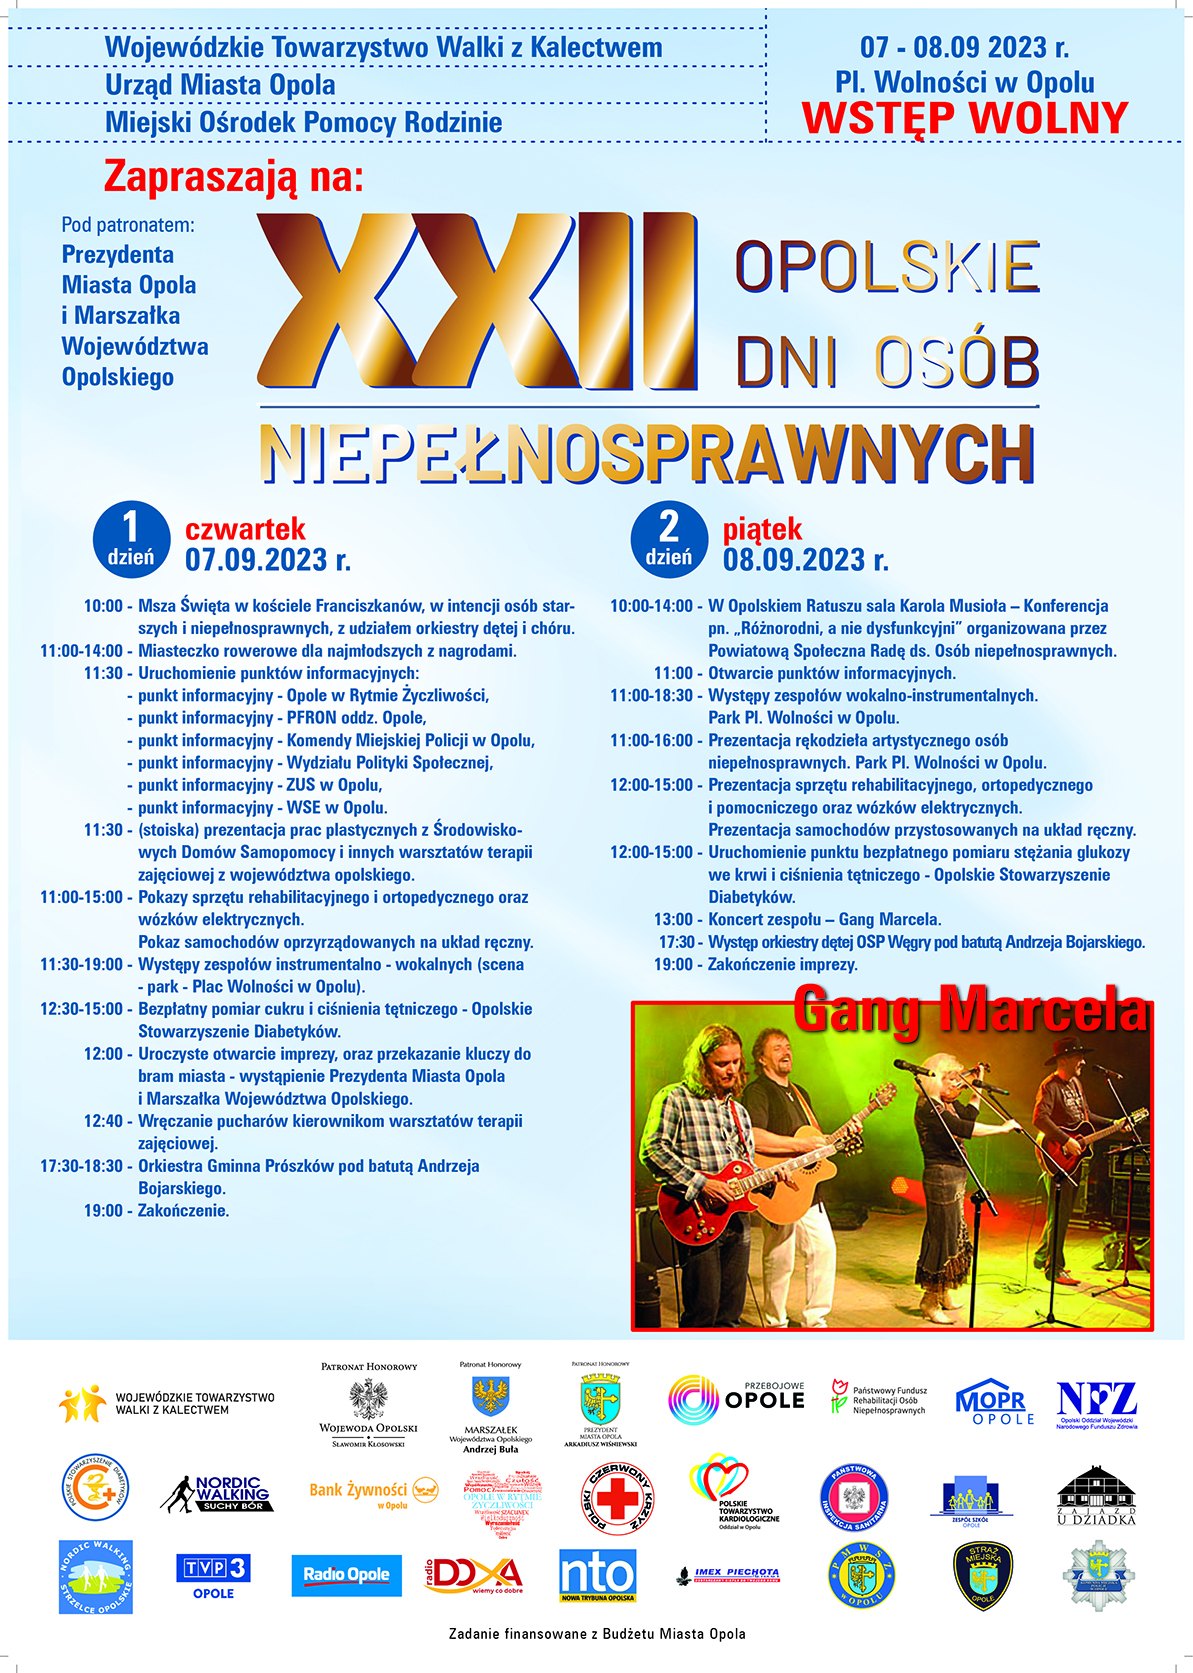 Plakat XXII Opolskich Dni Osób Niepełnosprawnych 7-8.09.2023 Opole